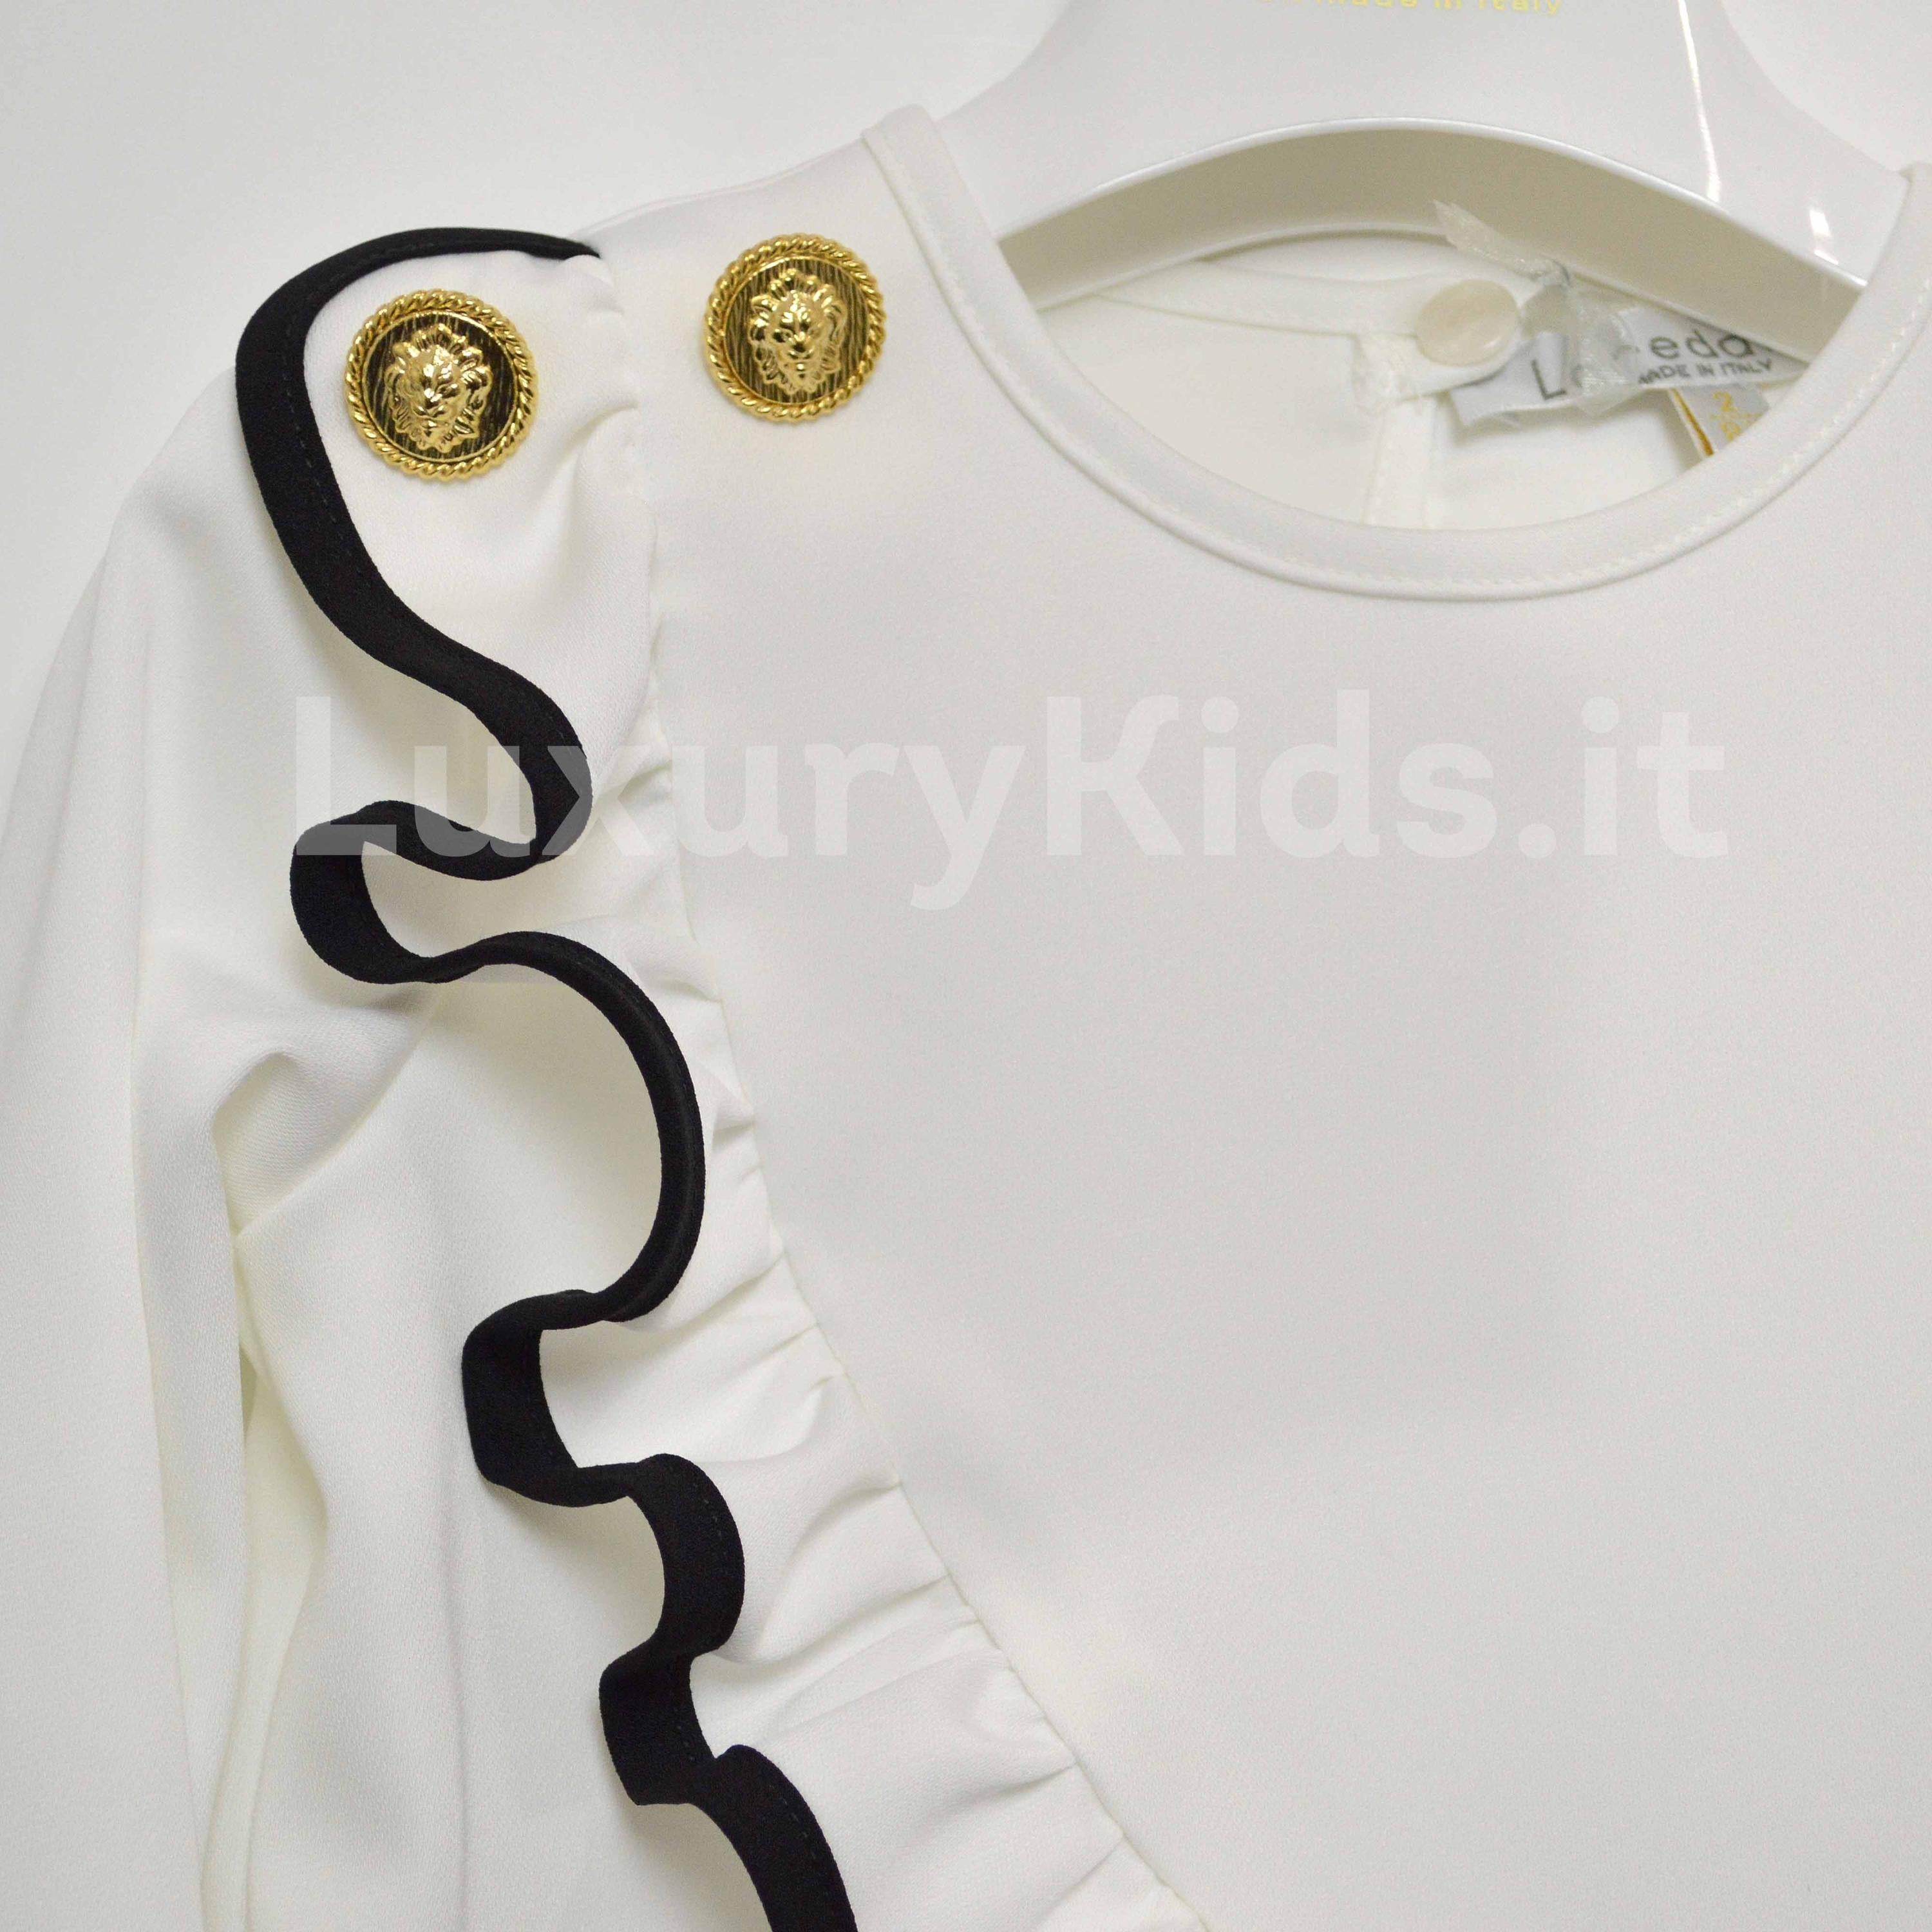 Camicia con rouches Elegante chic Moda Neonata  LOREDANA 7102 - LOLO' - LuxuryKids